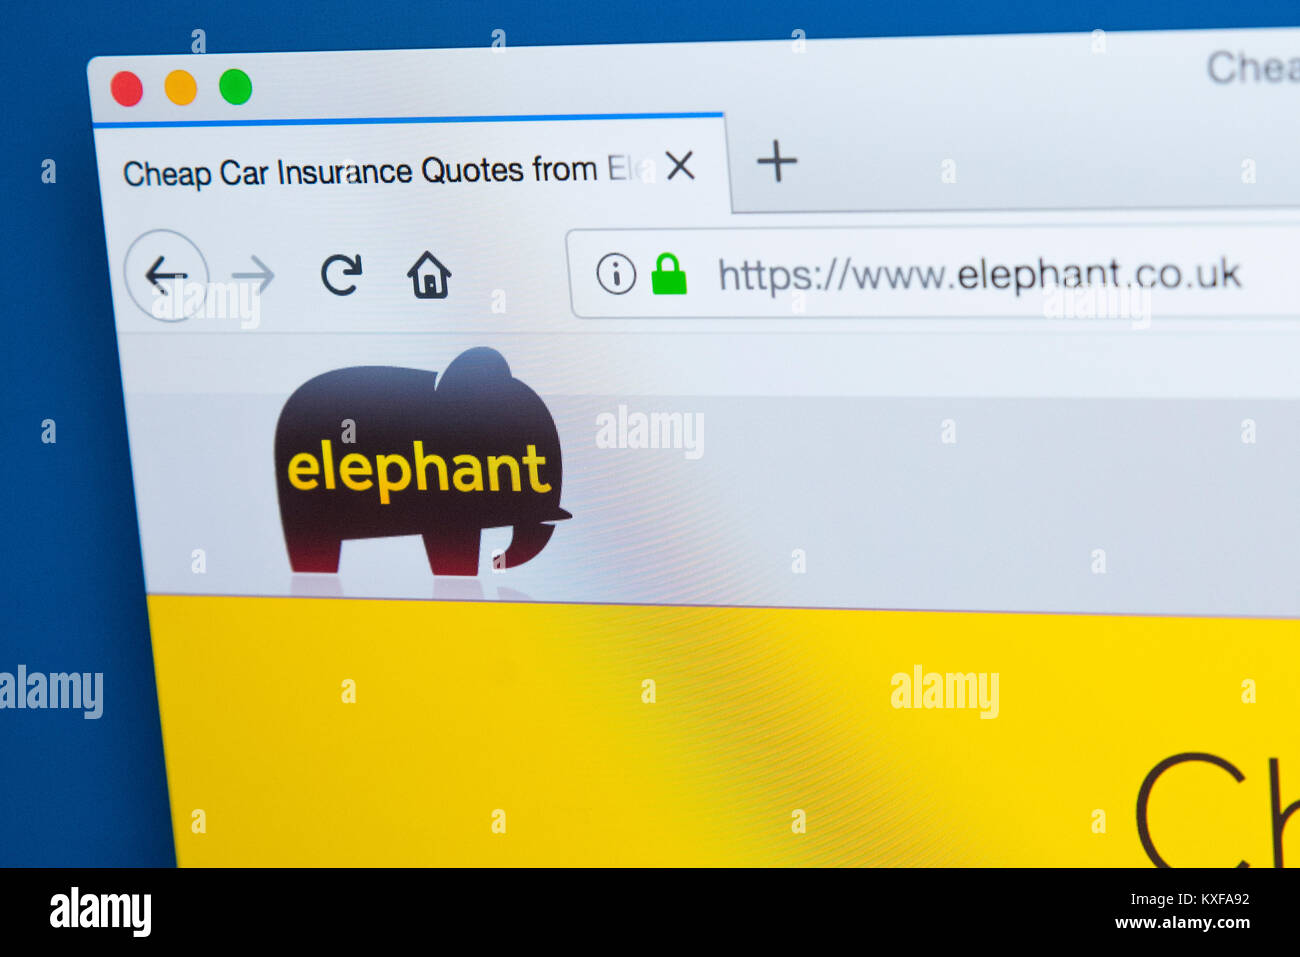 LONDON, Regno Unito - 4 gennaio 2018: la homepage del sito ufficiale di elephant.co.uk - un nome commerciale di EUI Limited, l'assicurazione auto specialista, Foto Stock